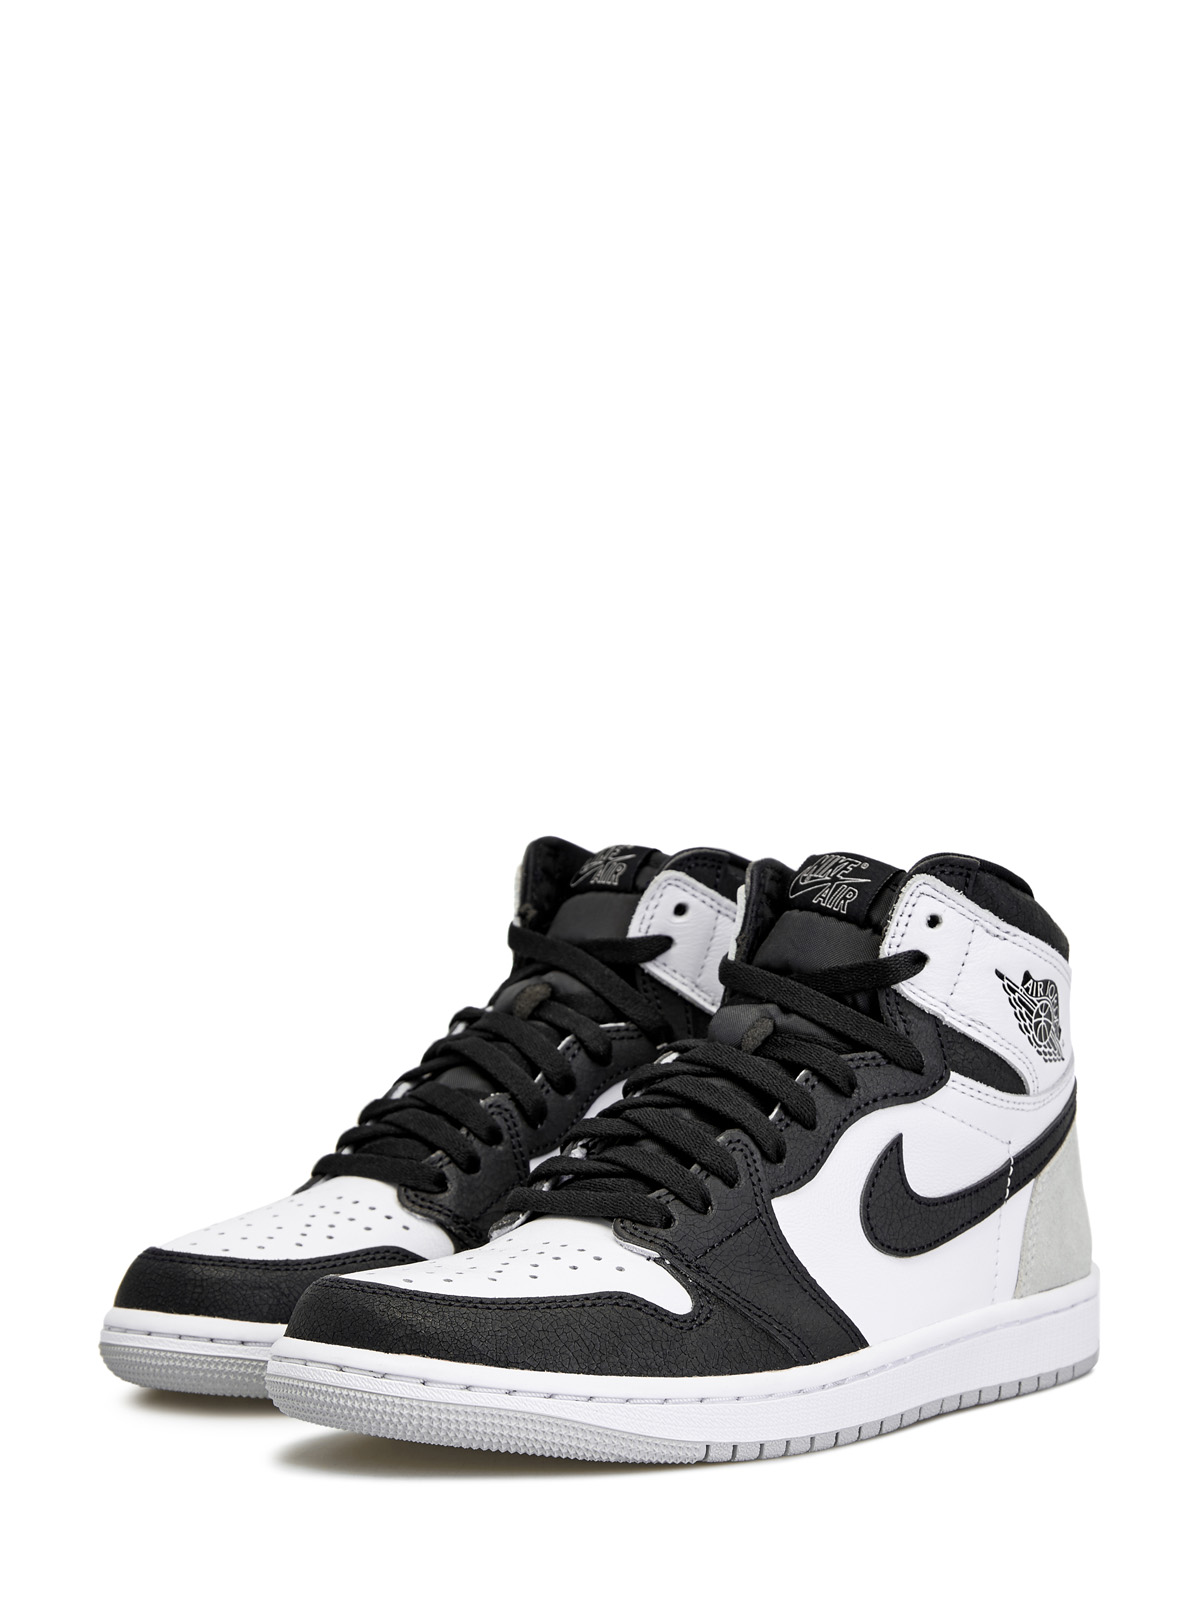 Кроссовки Jordan 1 Retro High OG 'Stage Haze' Jordan, цвет черный, размер 40;42.5;43;44;46;47.5 - фото 2